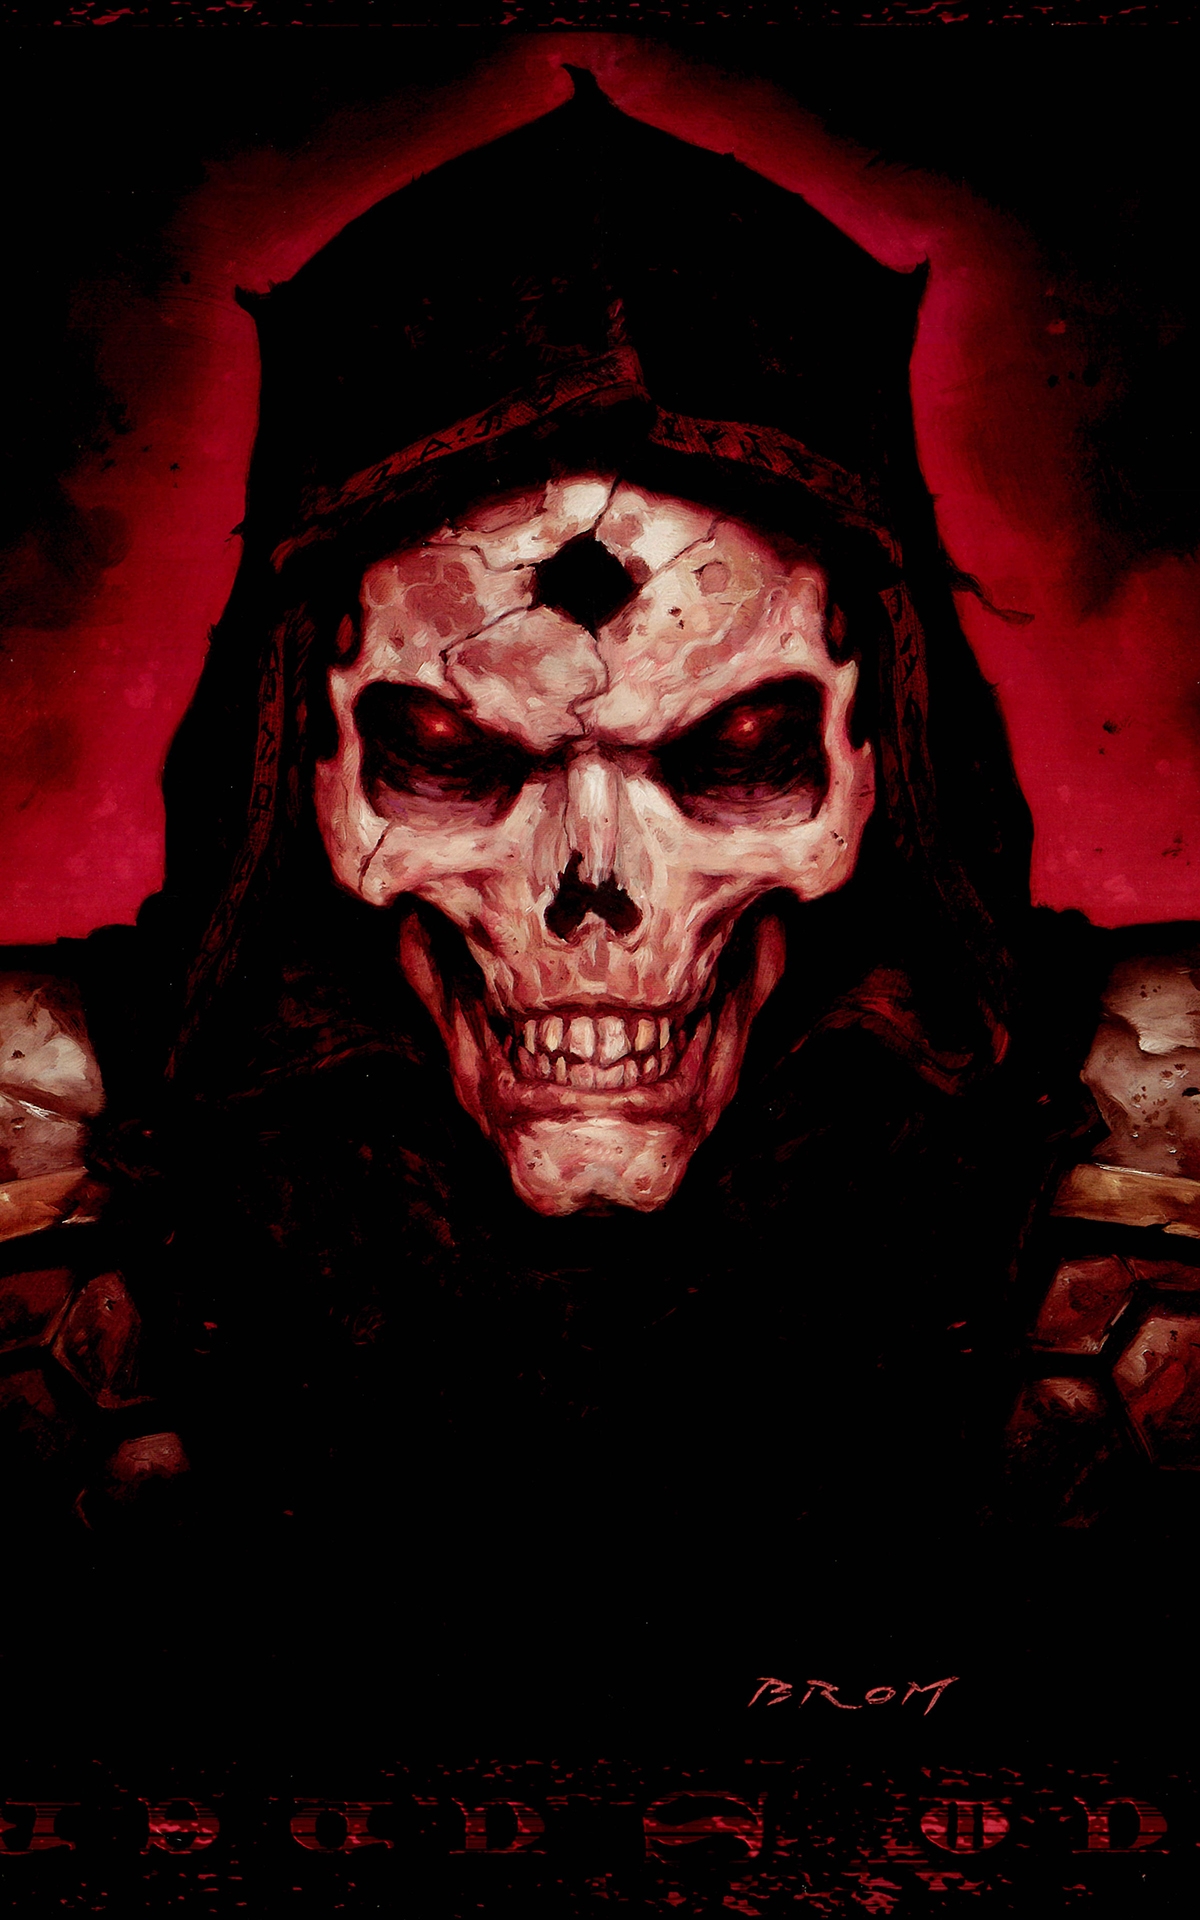 Evil Dark Skull Wallpaper - Diablo 2 Artwork - HD Wallpaper 